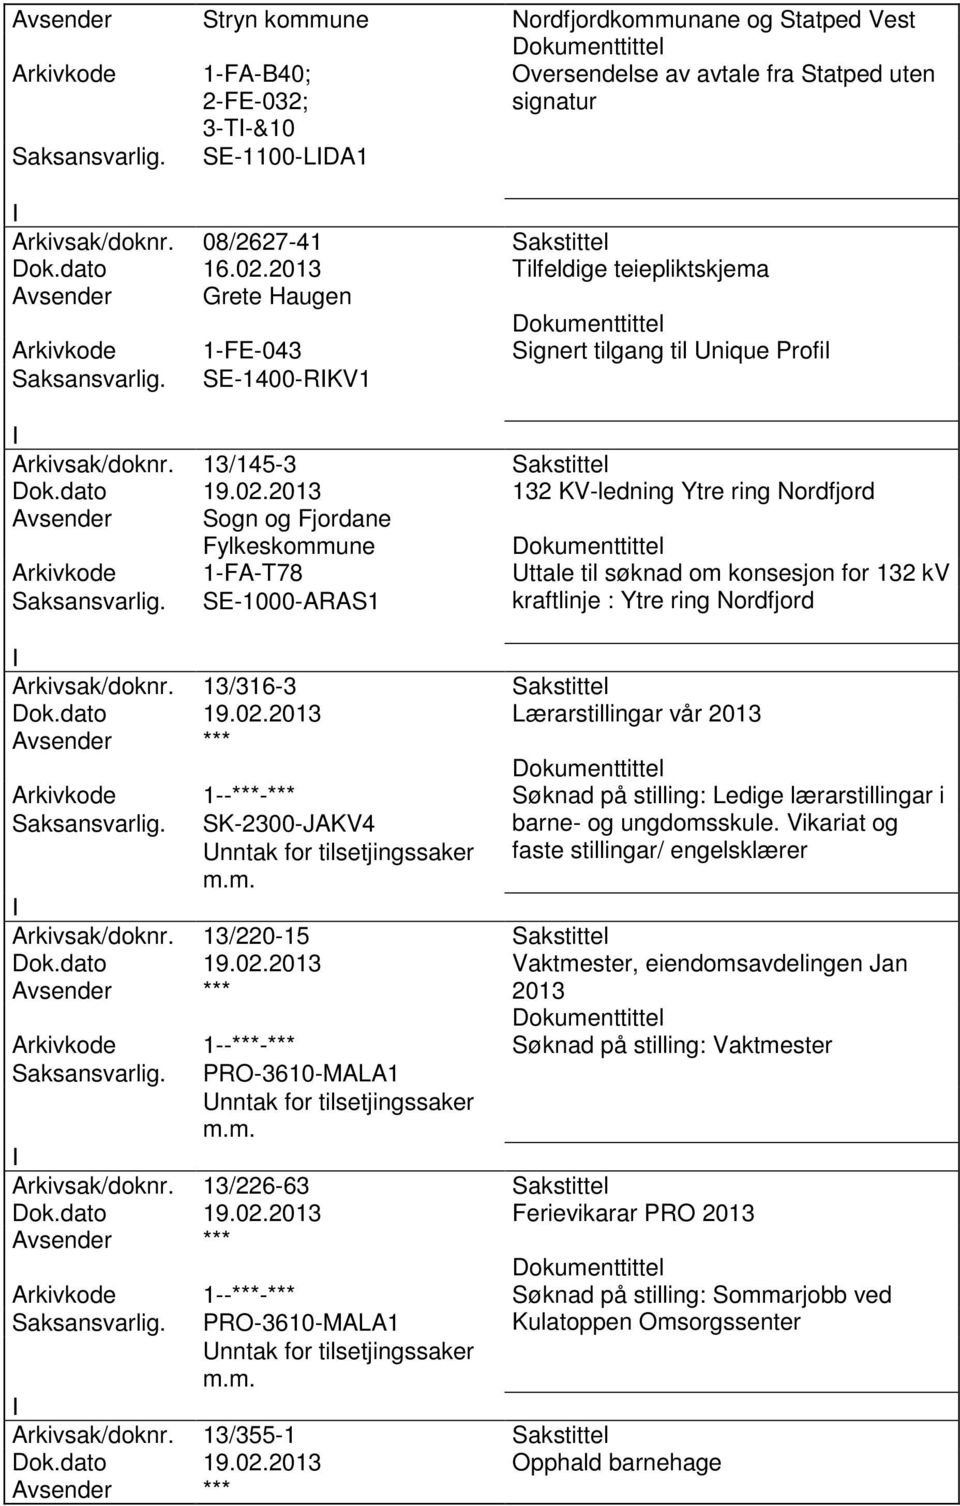 2013 Tilfeldige teiepliktskjema Avsender Grete Haugen Arkivkode 1-FE-043 Signert tilgang til Unique Profil SE-1400-RKV1 Arkivsak/doknr. 13/145-3 Sakstittel Dok.dato 19.02.